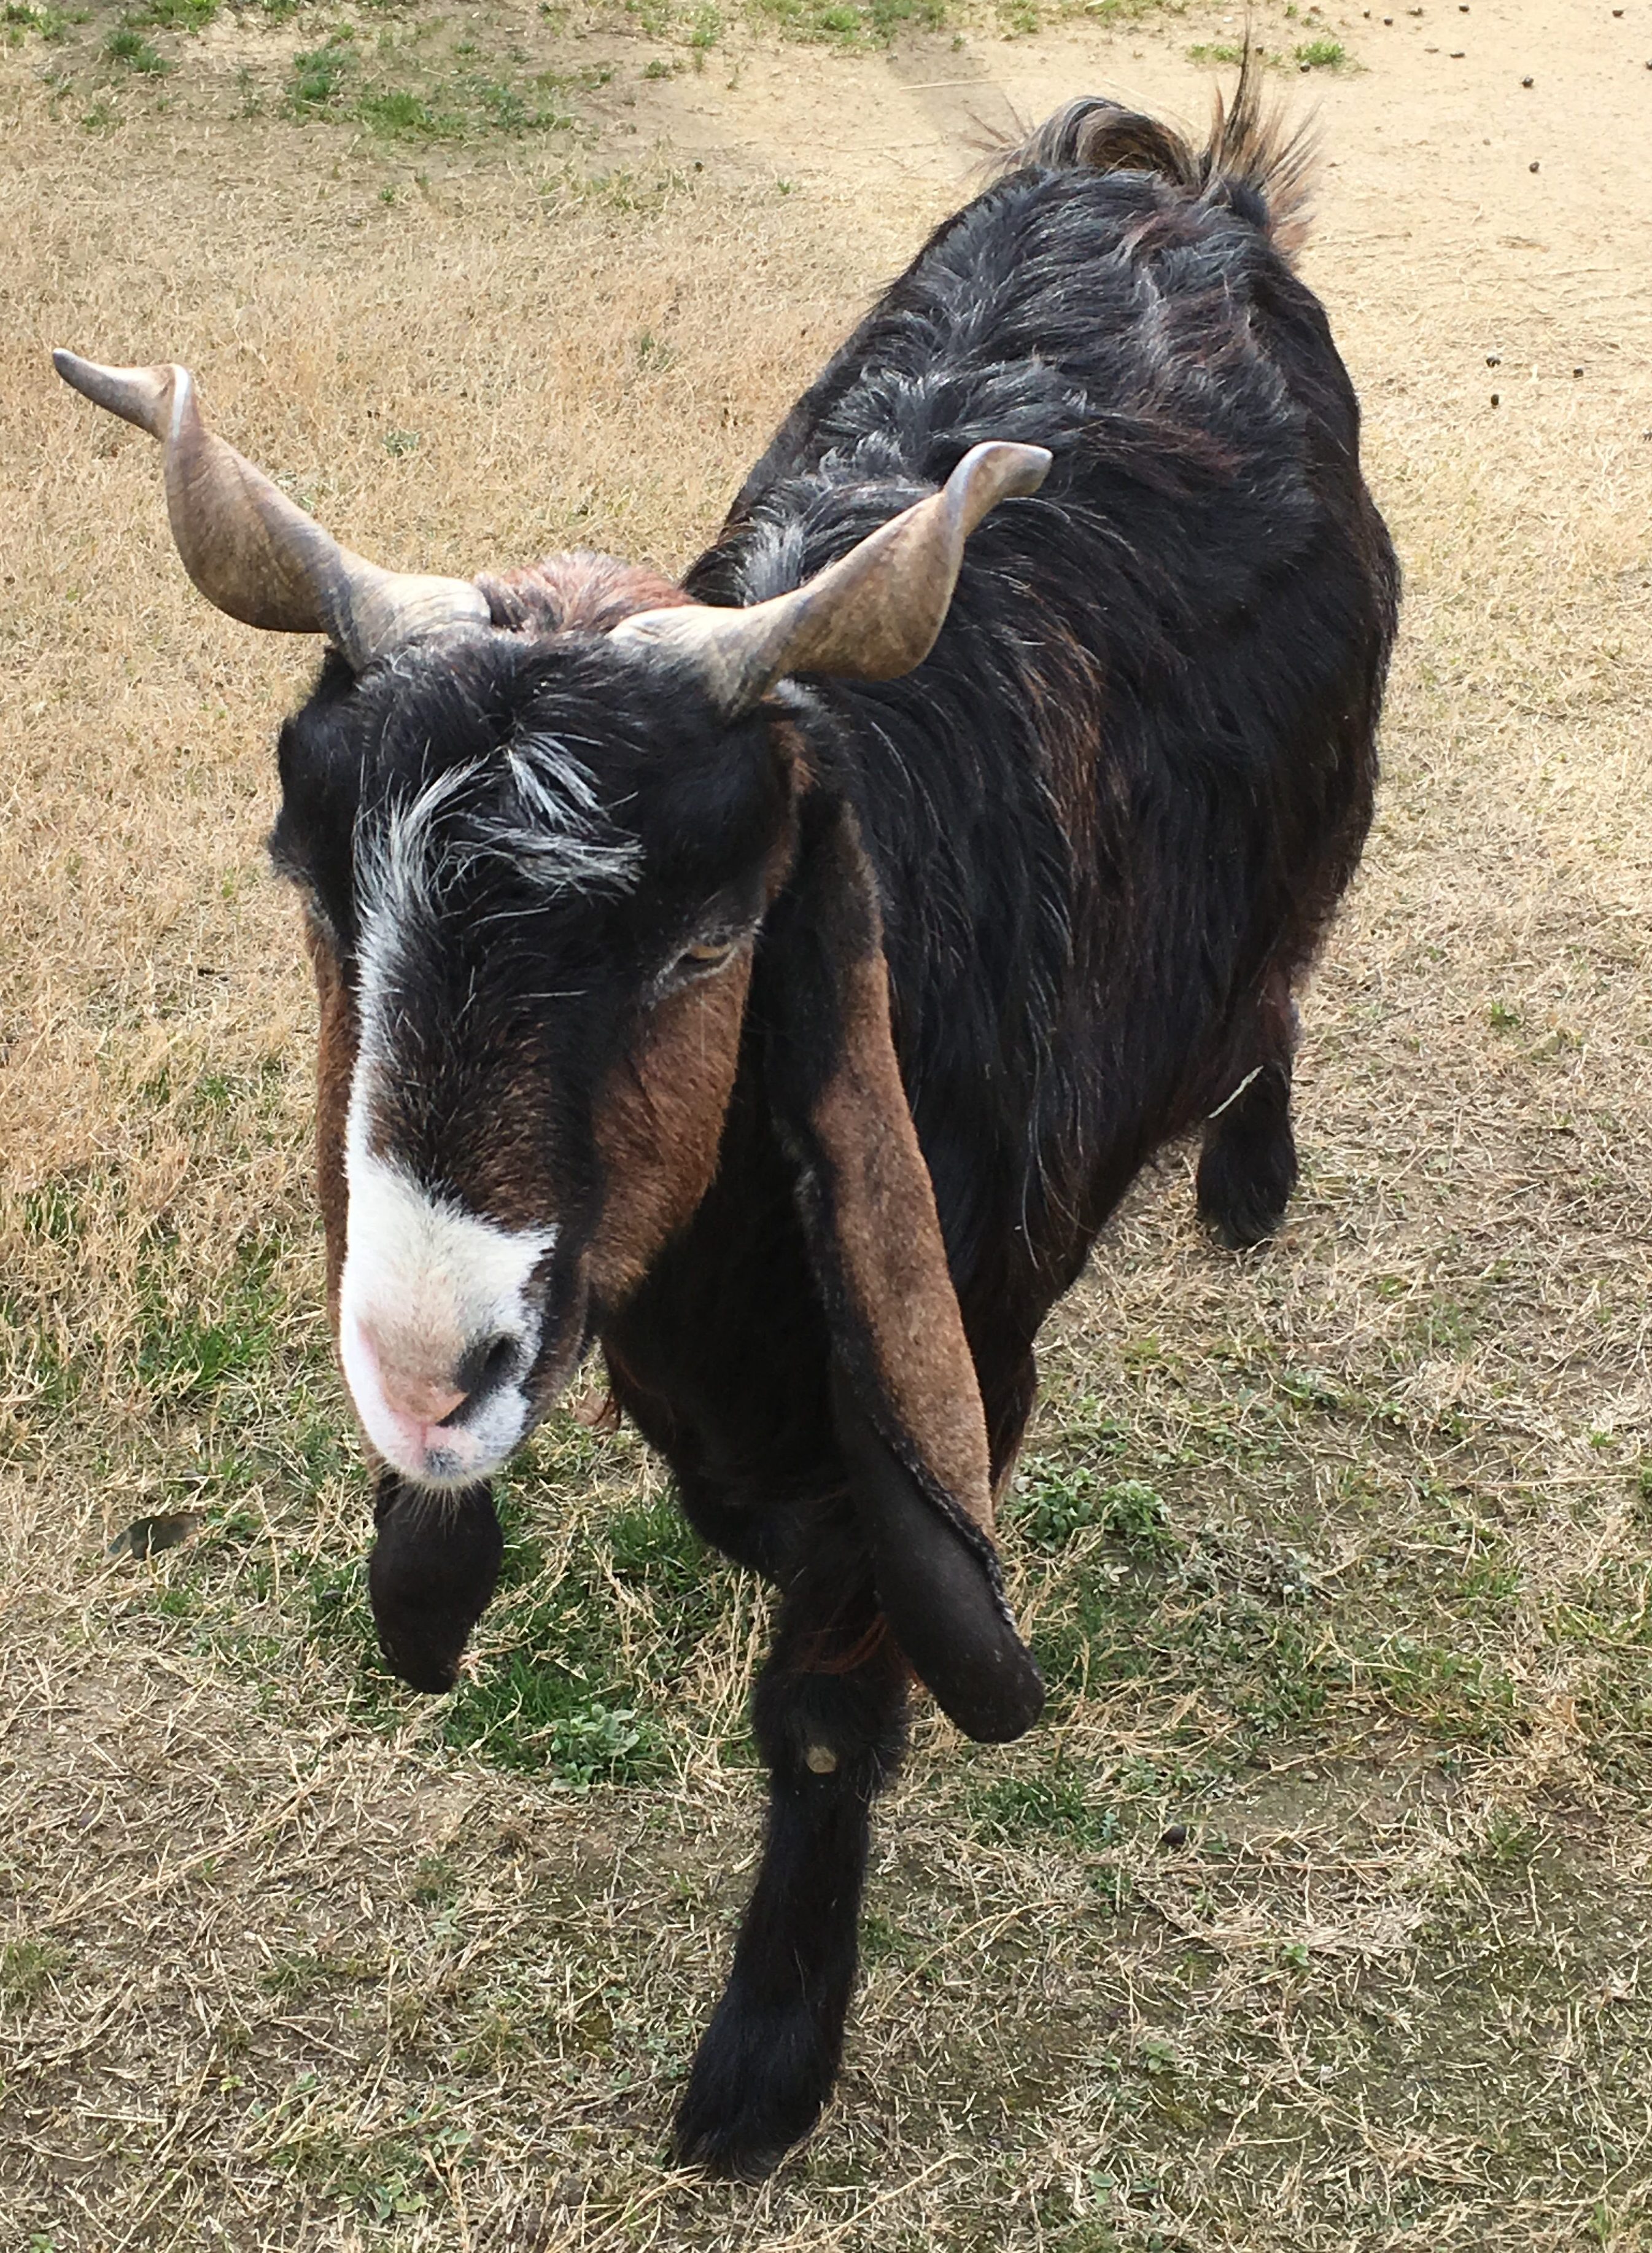 long-eared goat on grassy lawn